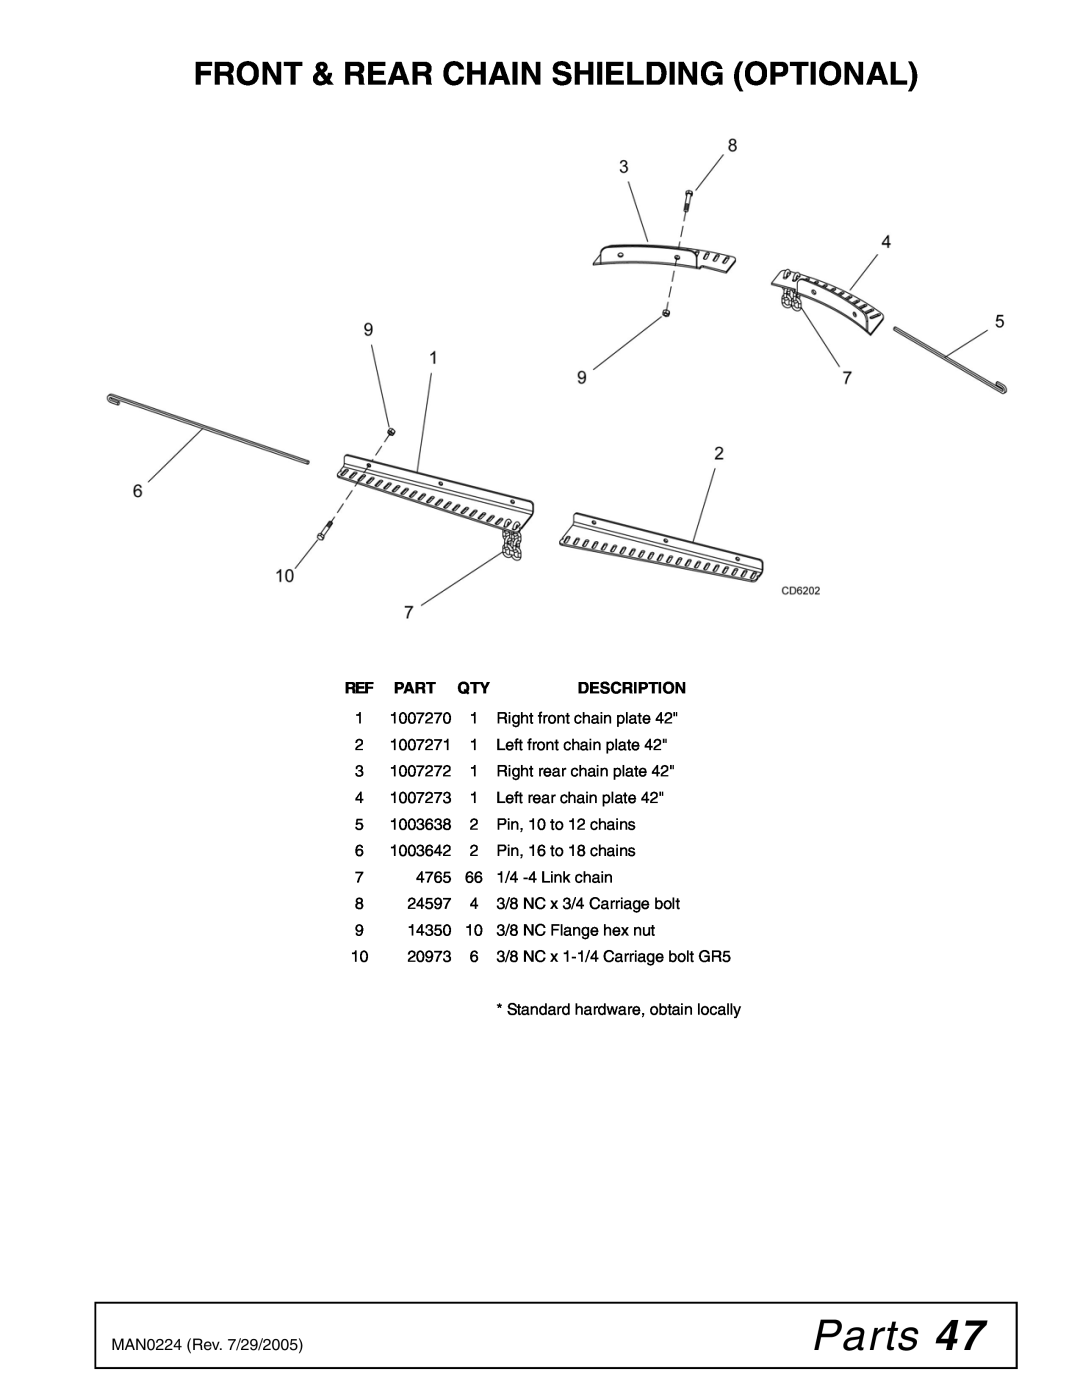 Woods Equipment RCC42 manual Front & Rear Chain Shielding Optional, Parts, Description 